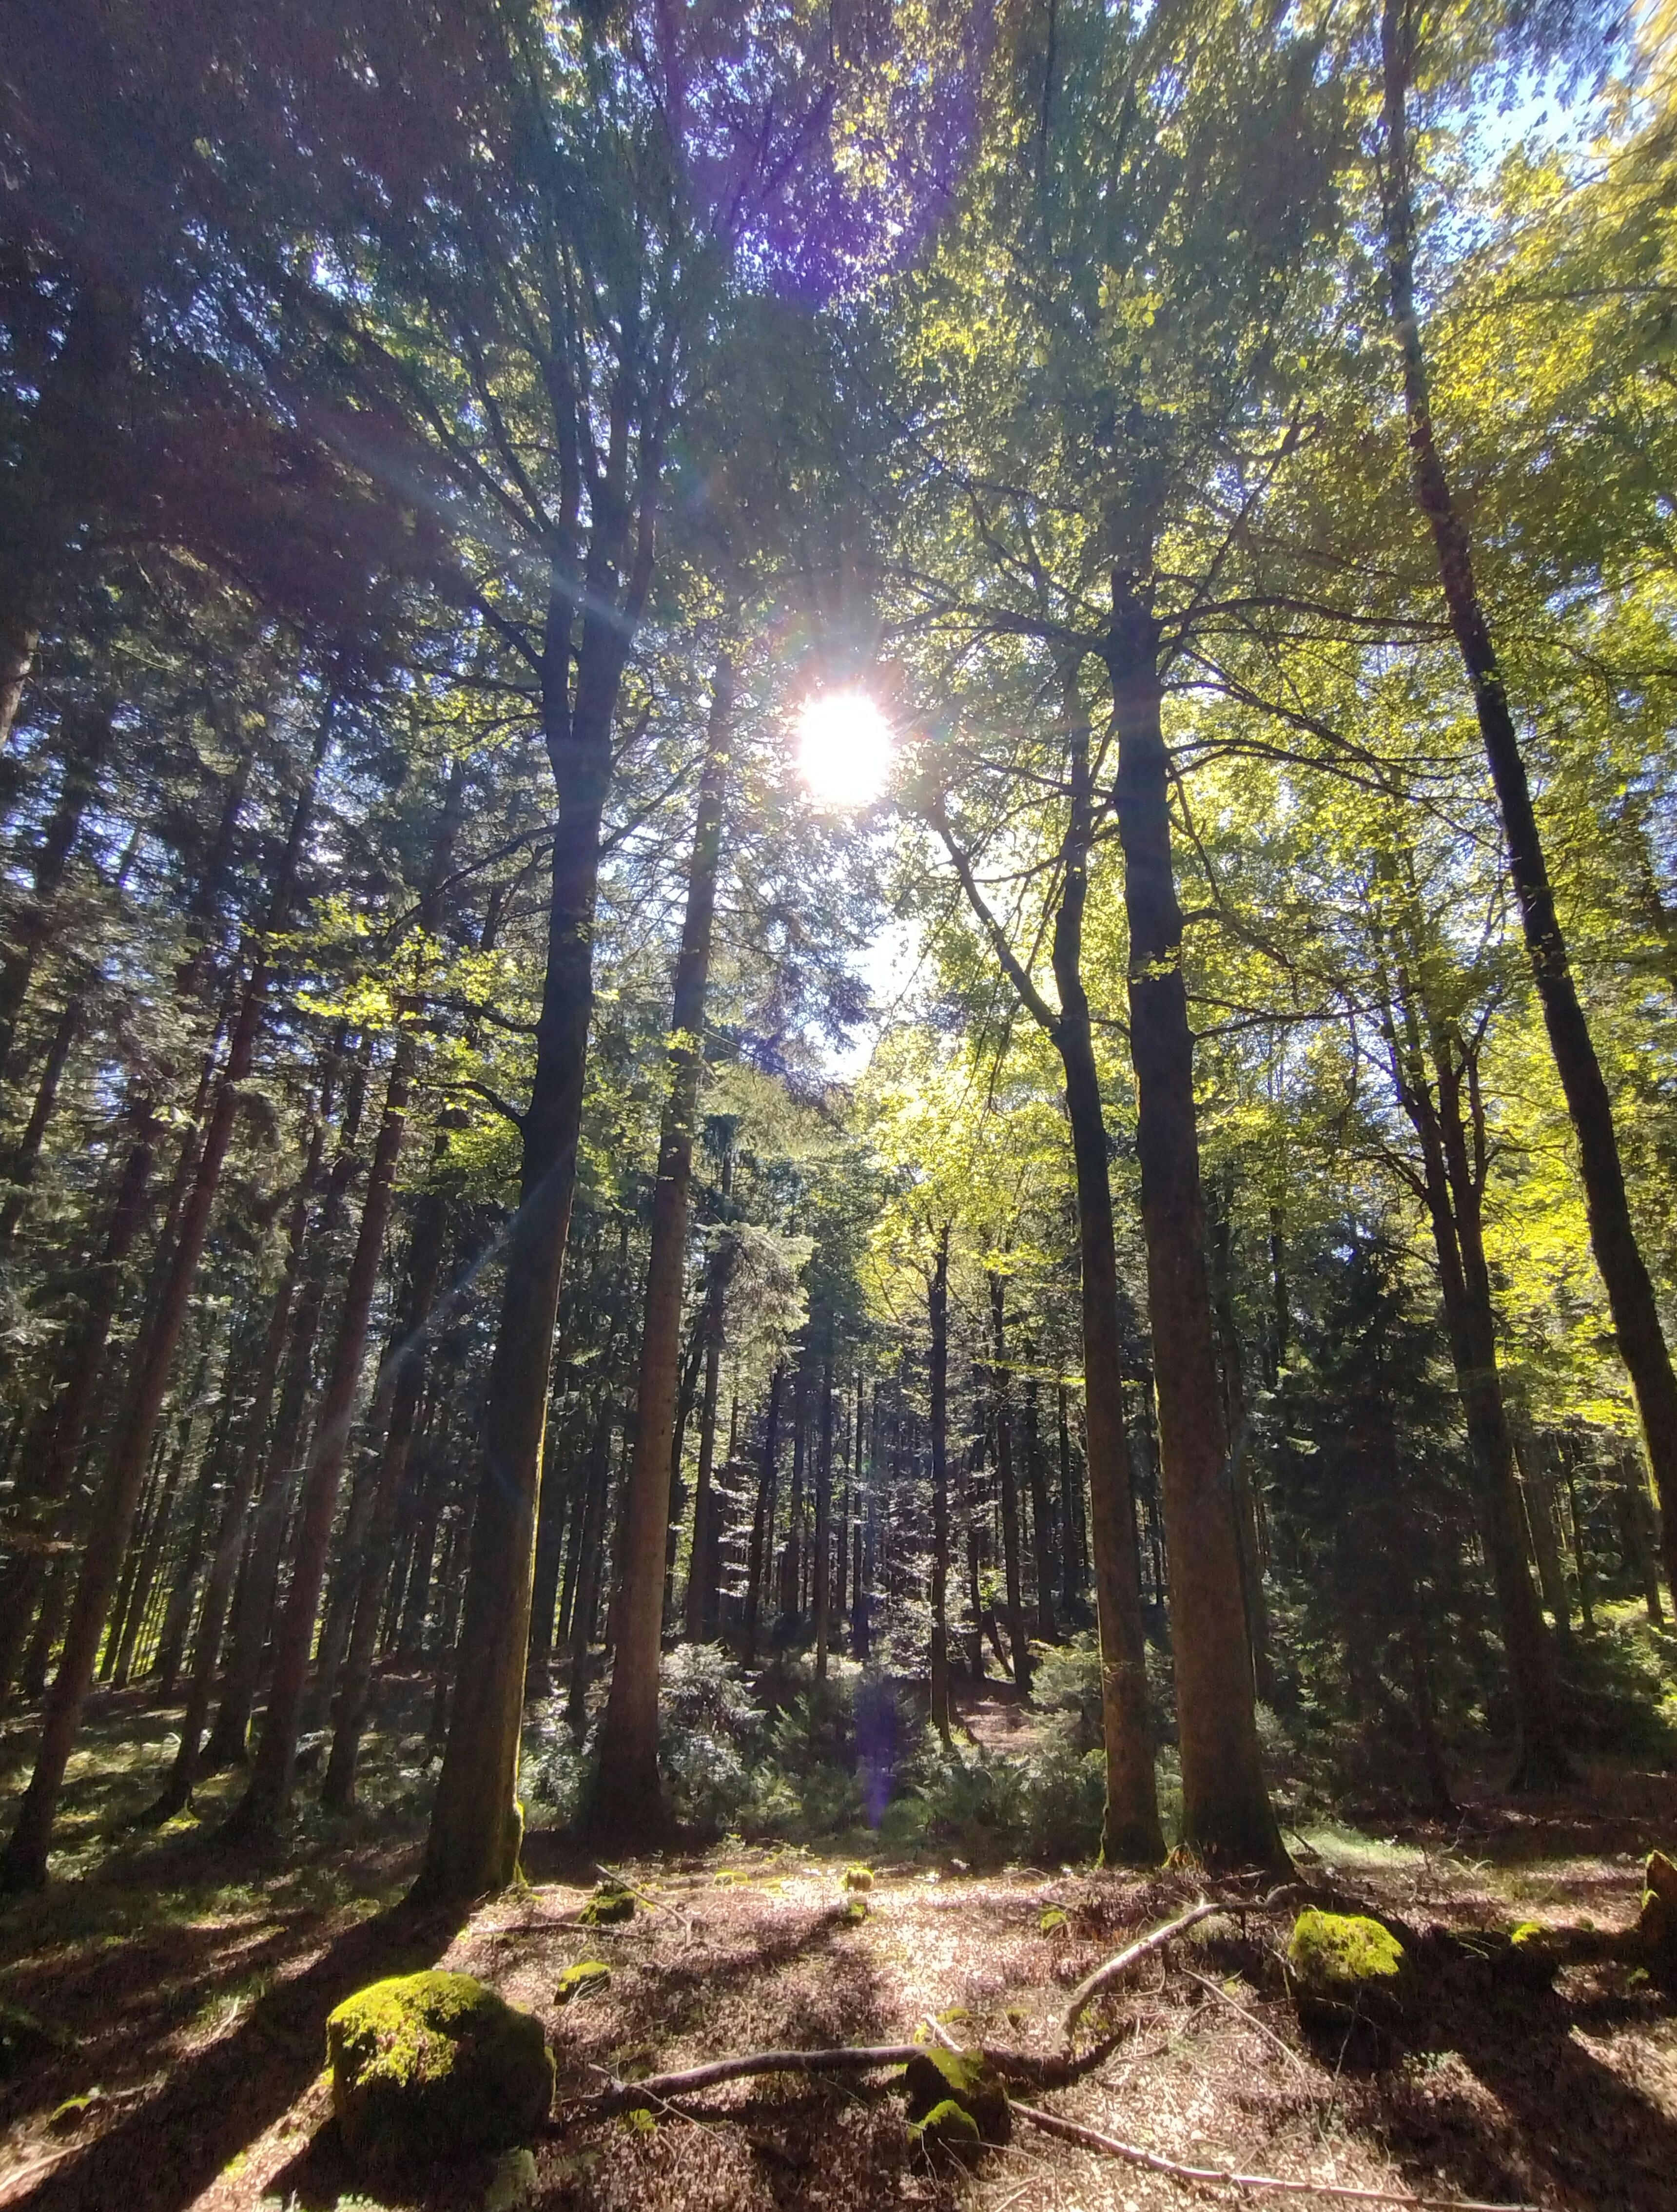 🌲🌳 🌲🌞🌲🌳 🌲
#schwarzwald #wald #natur #naturliebe #schwarzwaldliebe